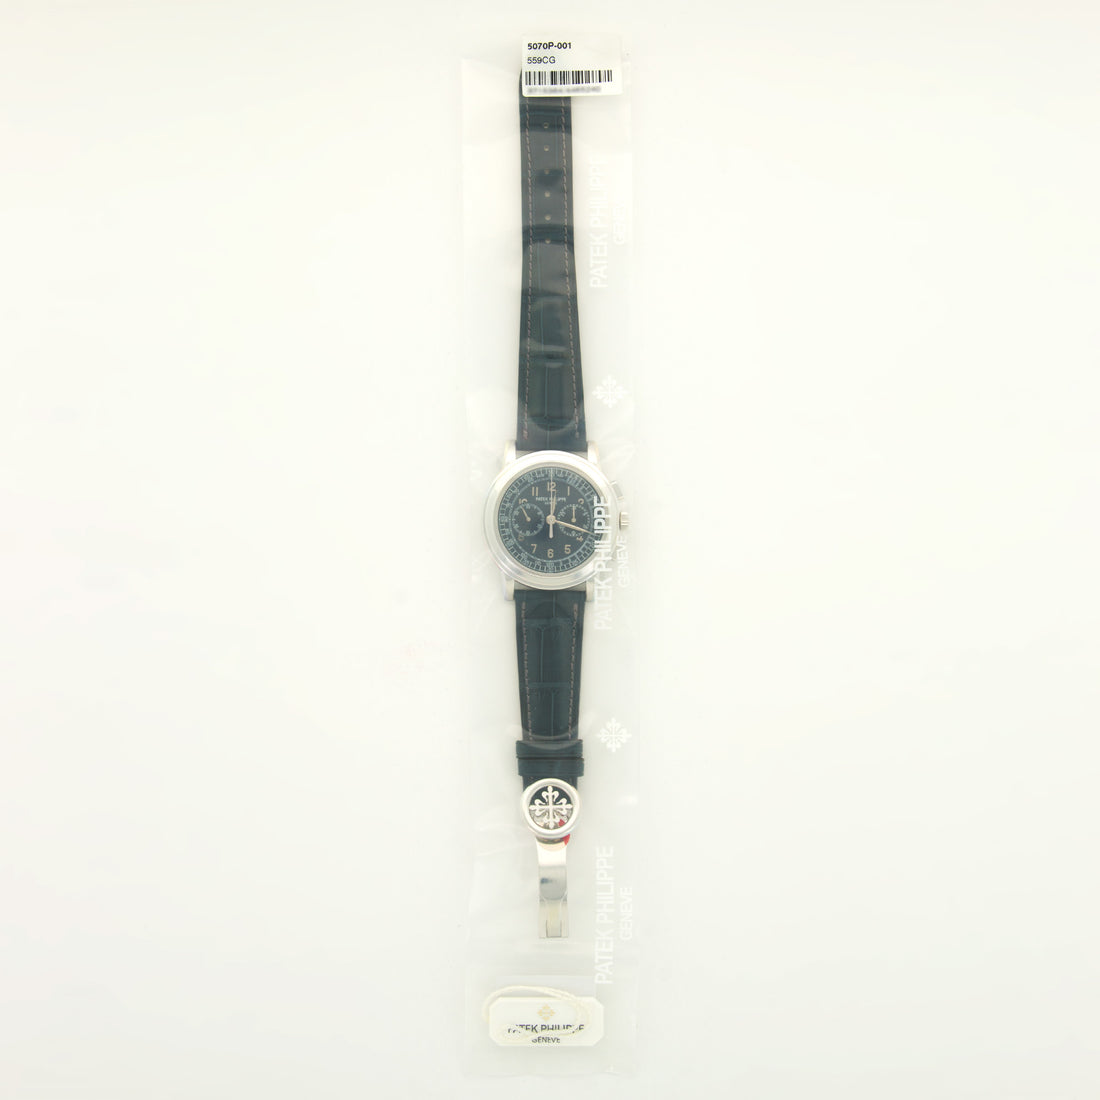 Unworn Patek Philippe Platinum Chronograph Ref. 5070 in Original Plastic Seal